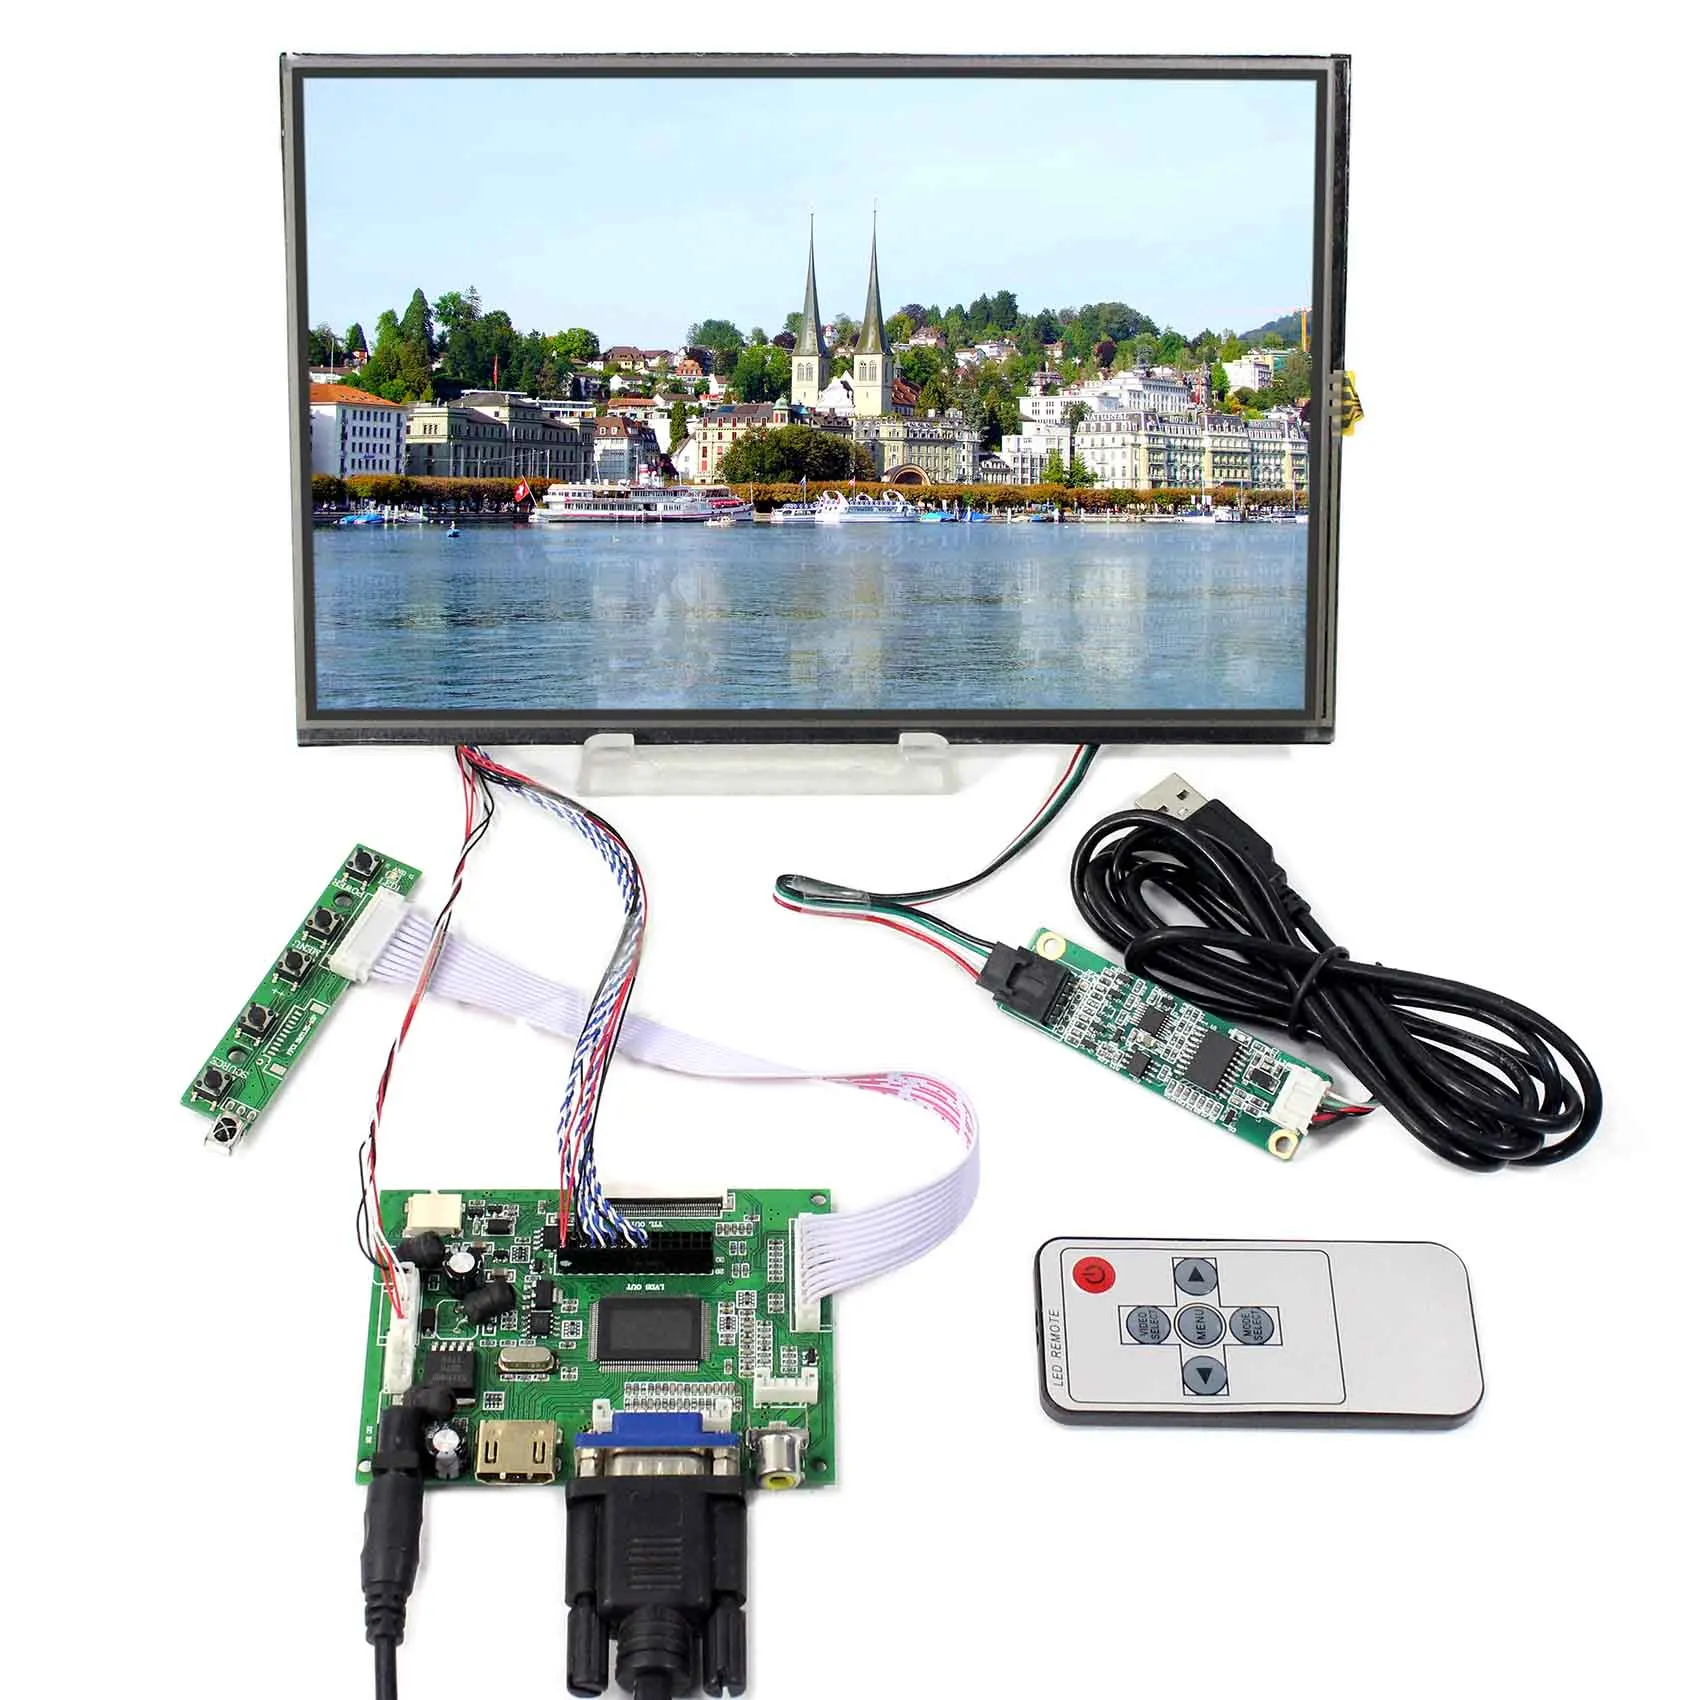 

HD MI VGA 2AV LCD Controller Board 10.1" 1280x800 M101NWWB Resistive Touch Panel